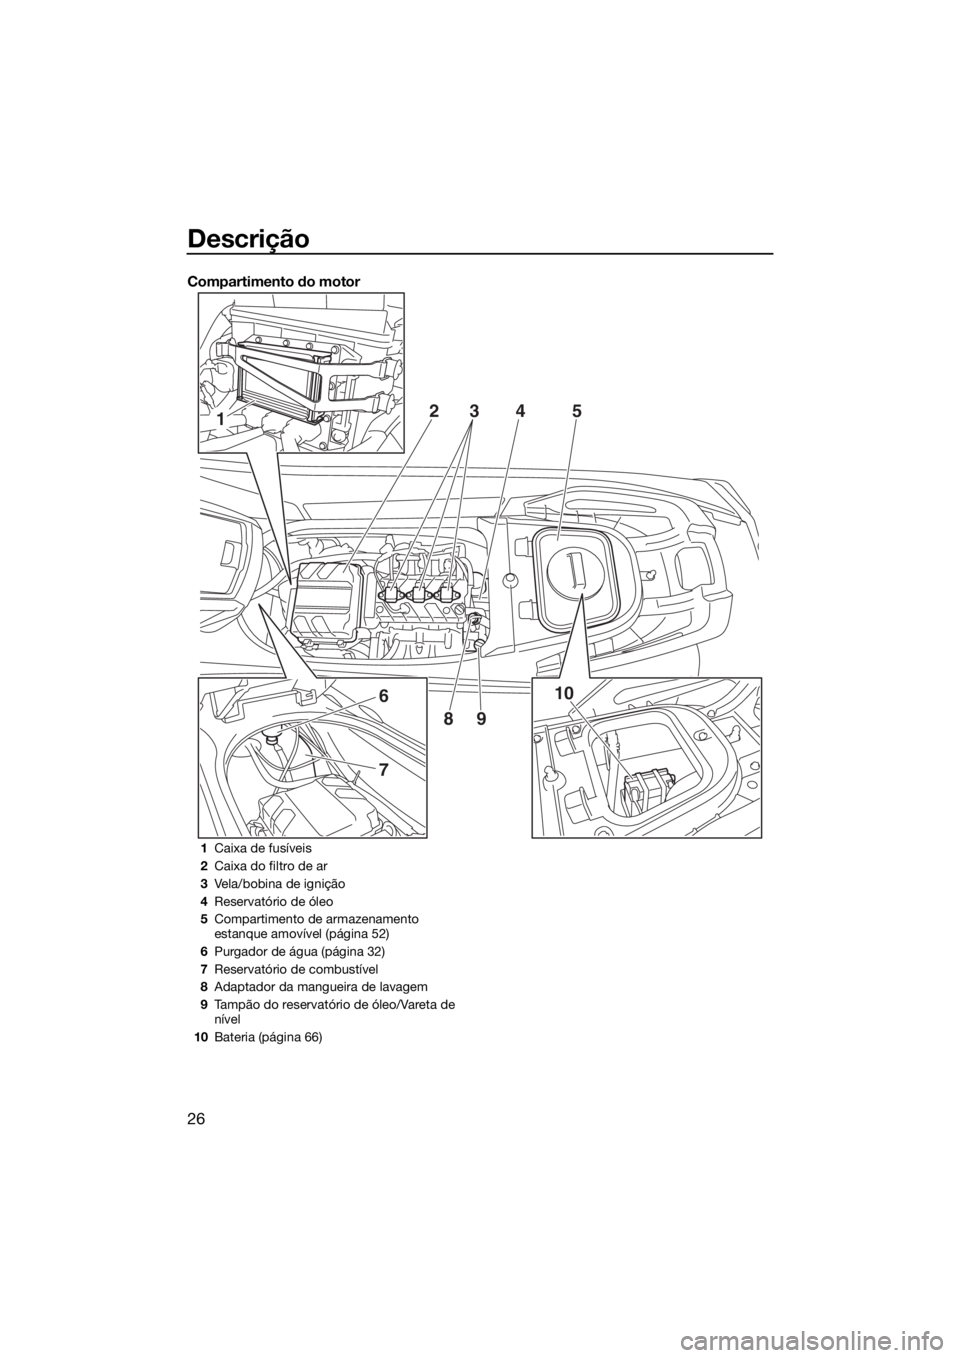 YAMAHA VX LIMITED 2017  Manual de utilização (in Portuguese) Descrição
26
Compartimento do motor
1
6
7
10 2
345
89
1Caixa de fusíveis
2Caixa do filtro de ar
3Vela/bobina de ignição
4Reservatório de óleo
5Compartimento de armazenamento 
estanque amovível